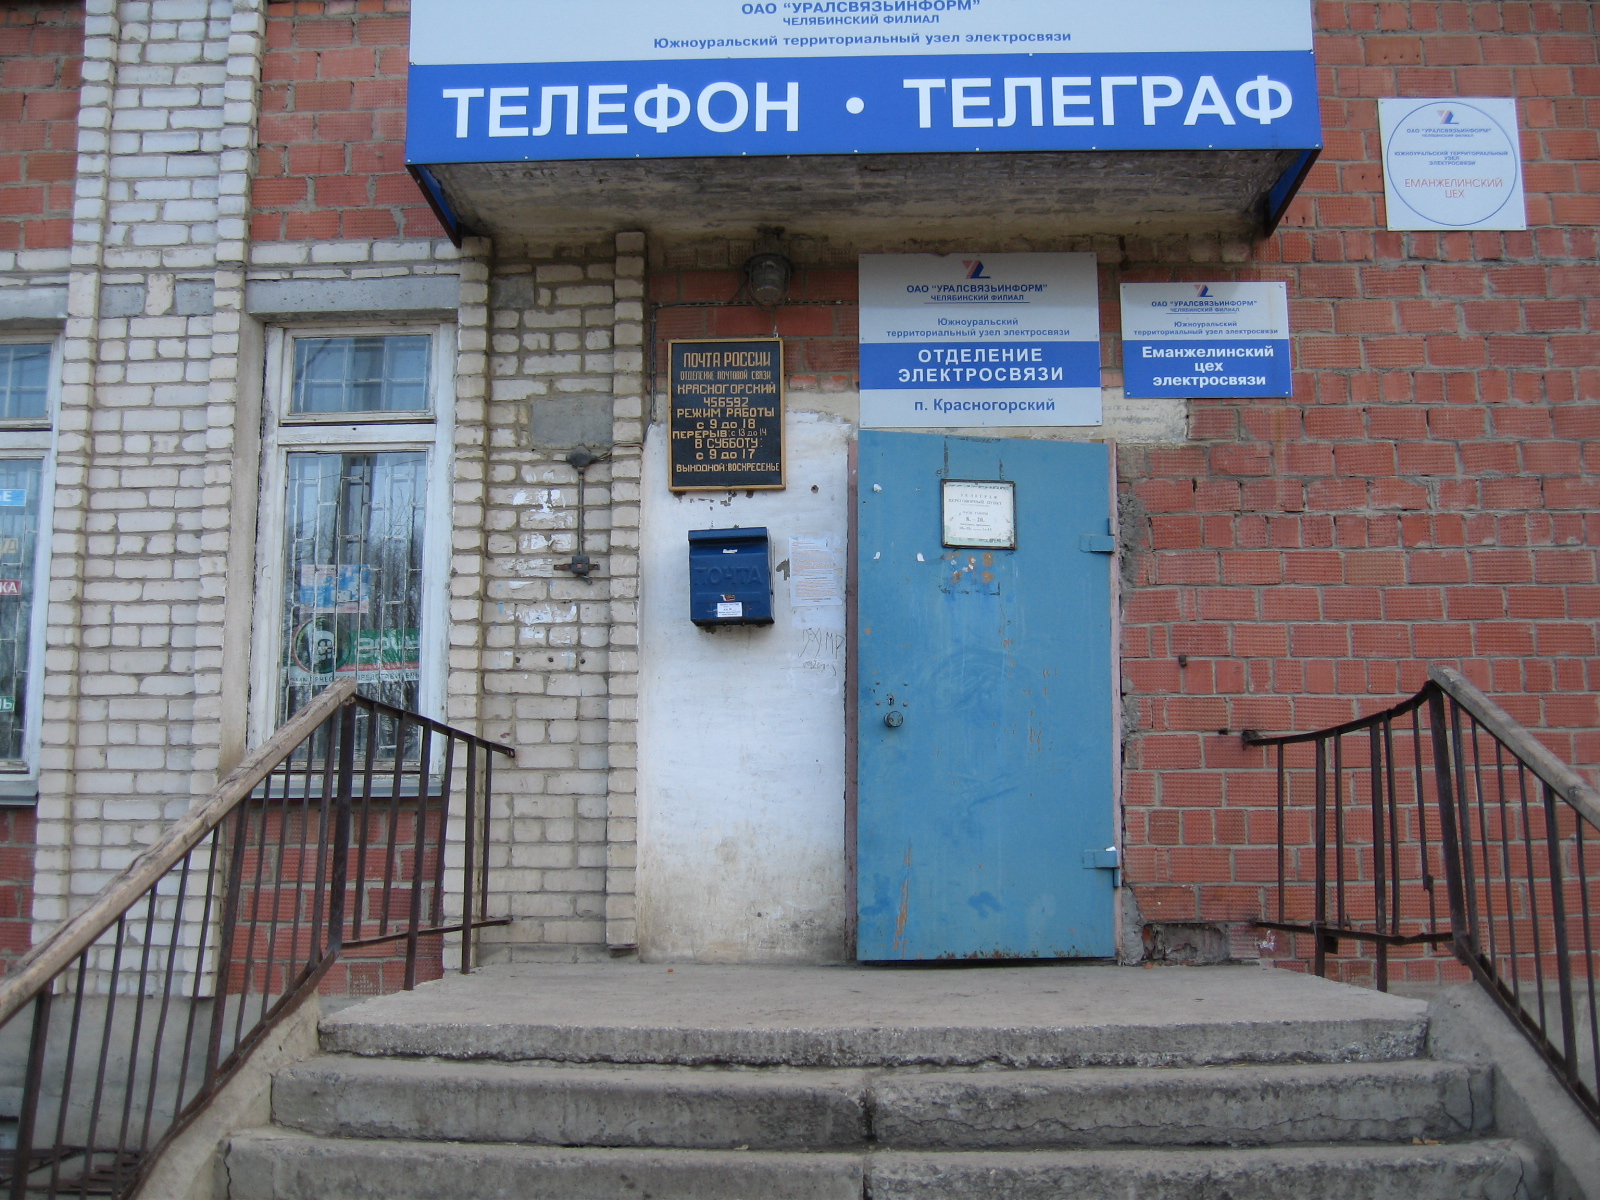 ВХОД, отделение почтовой связи 456592, Челябинская обл., Еманжелинск, Красногорский